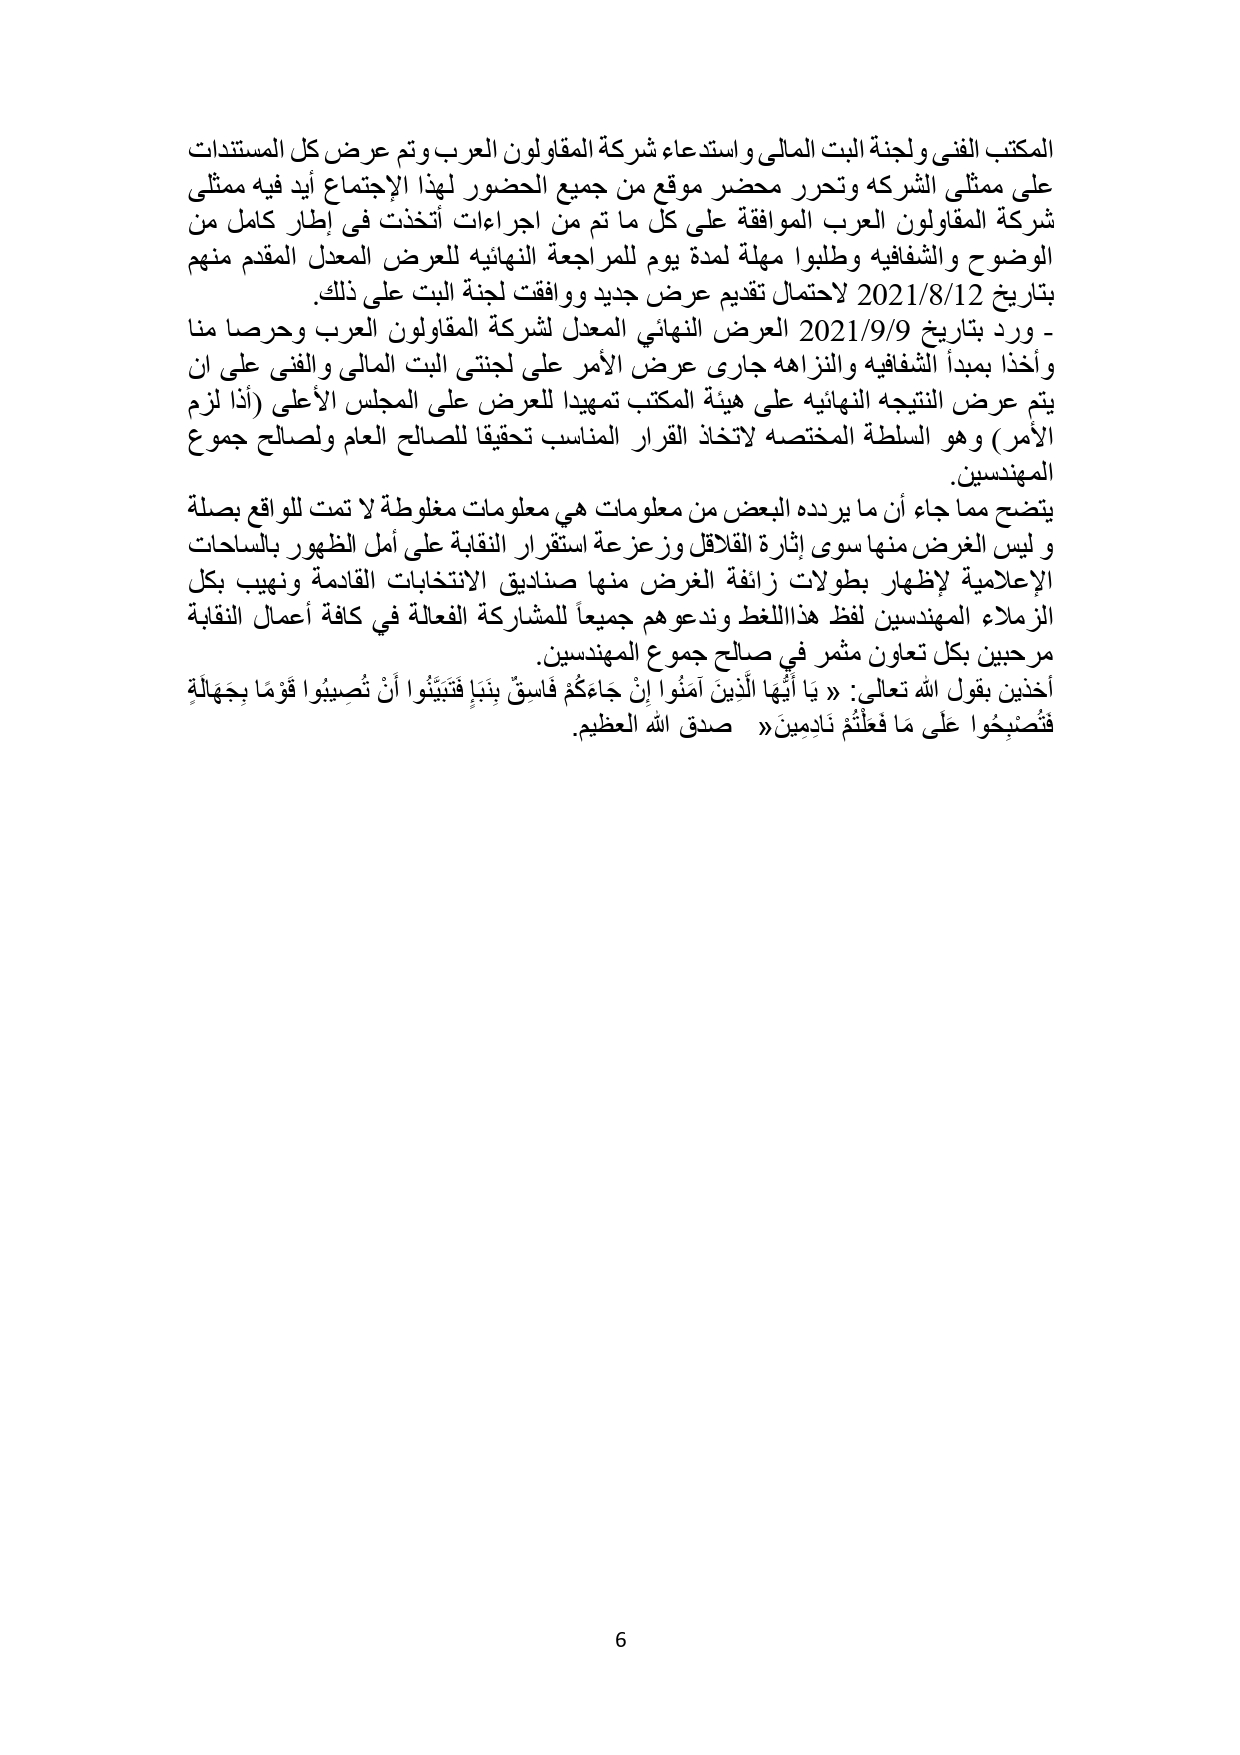 البيان النهائى حول مشروع مستشفى المهندسين بمدينة بدر_page-0006